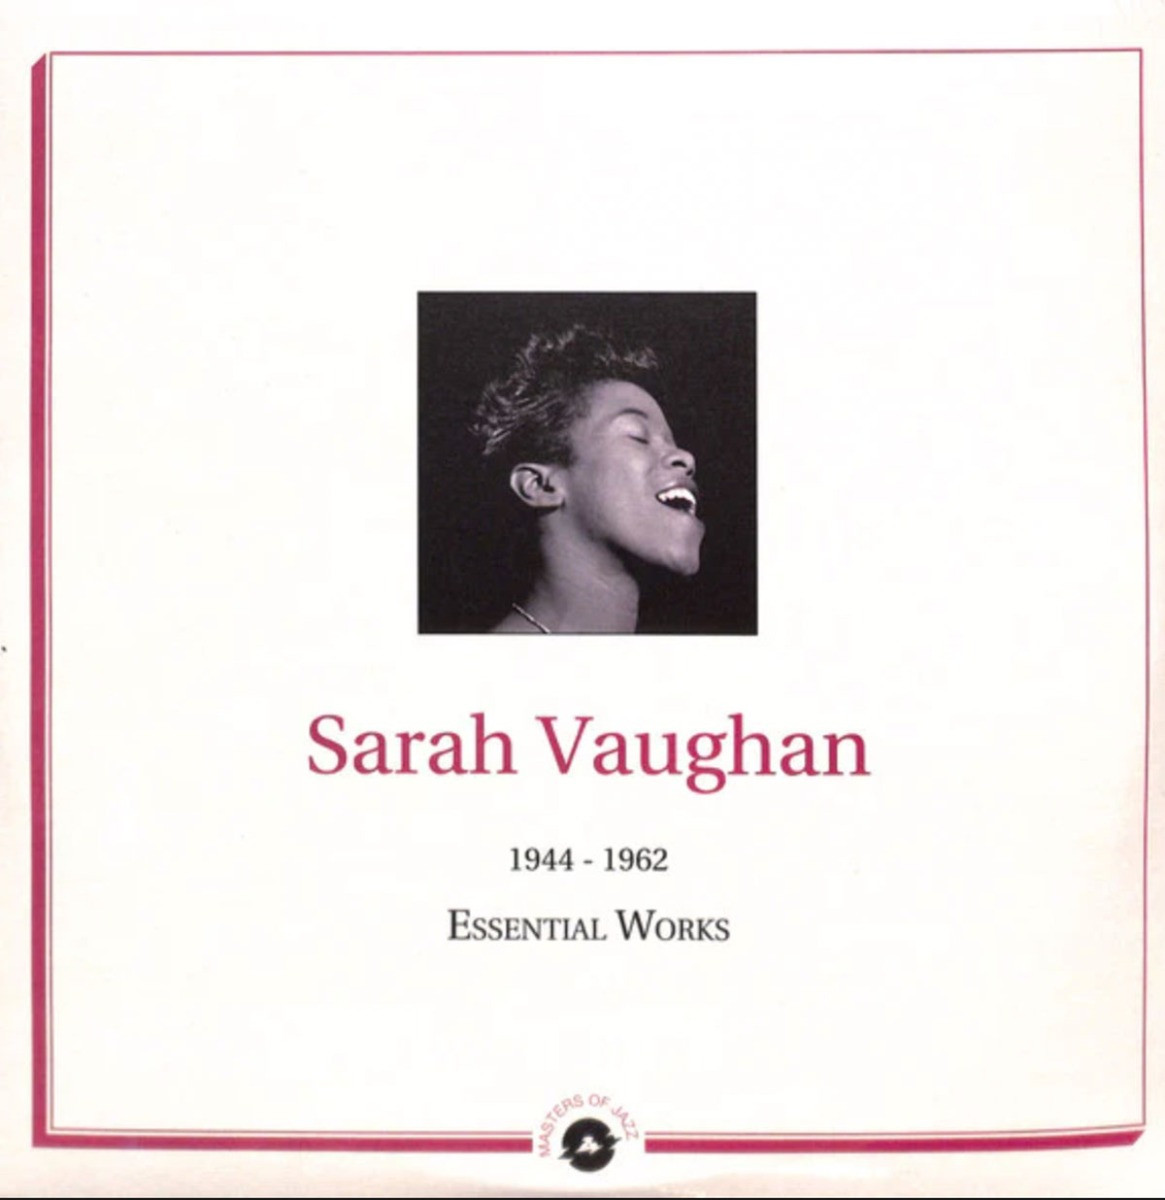 Sarah Vaughan - Essential Works 1944-1962 2LP